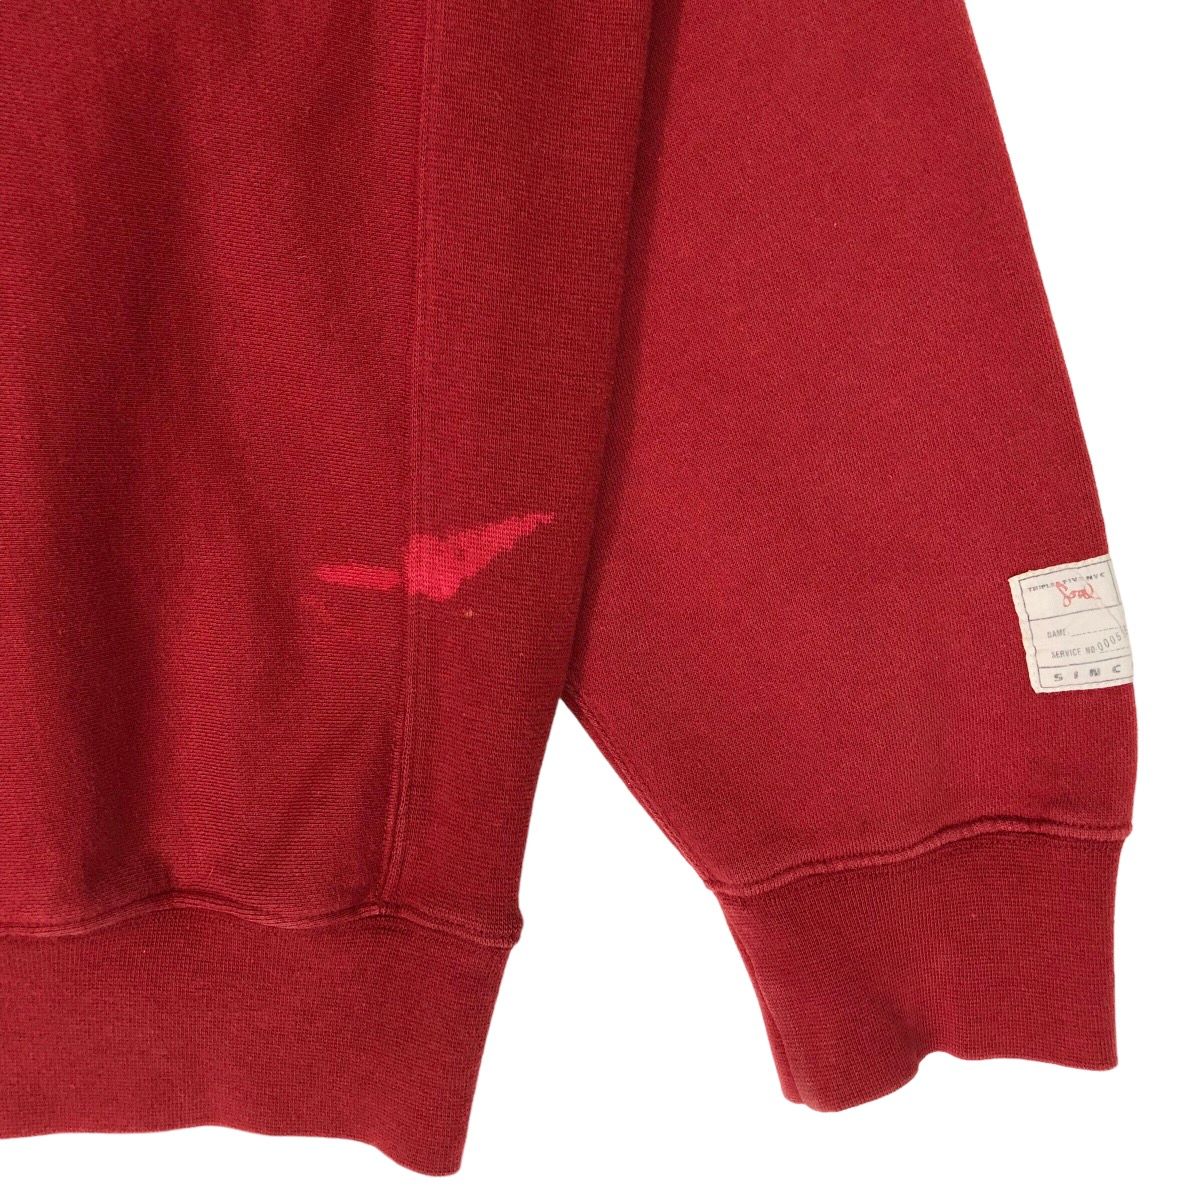 Vintage Triple Five Soul NYC Crewneck Sweatshirts Size US XL / EU 56 / 4 - 5 Thumbnail